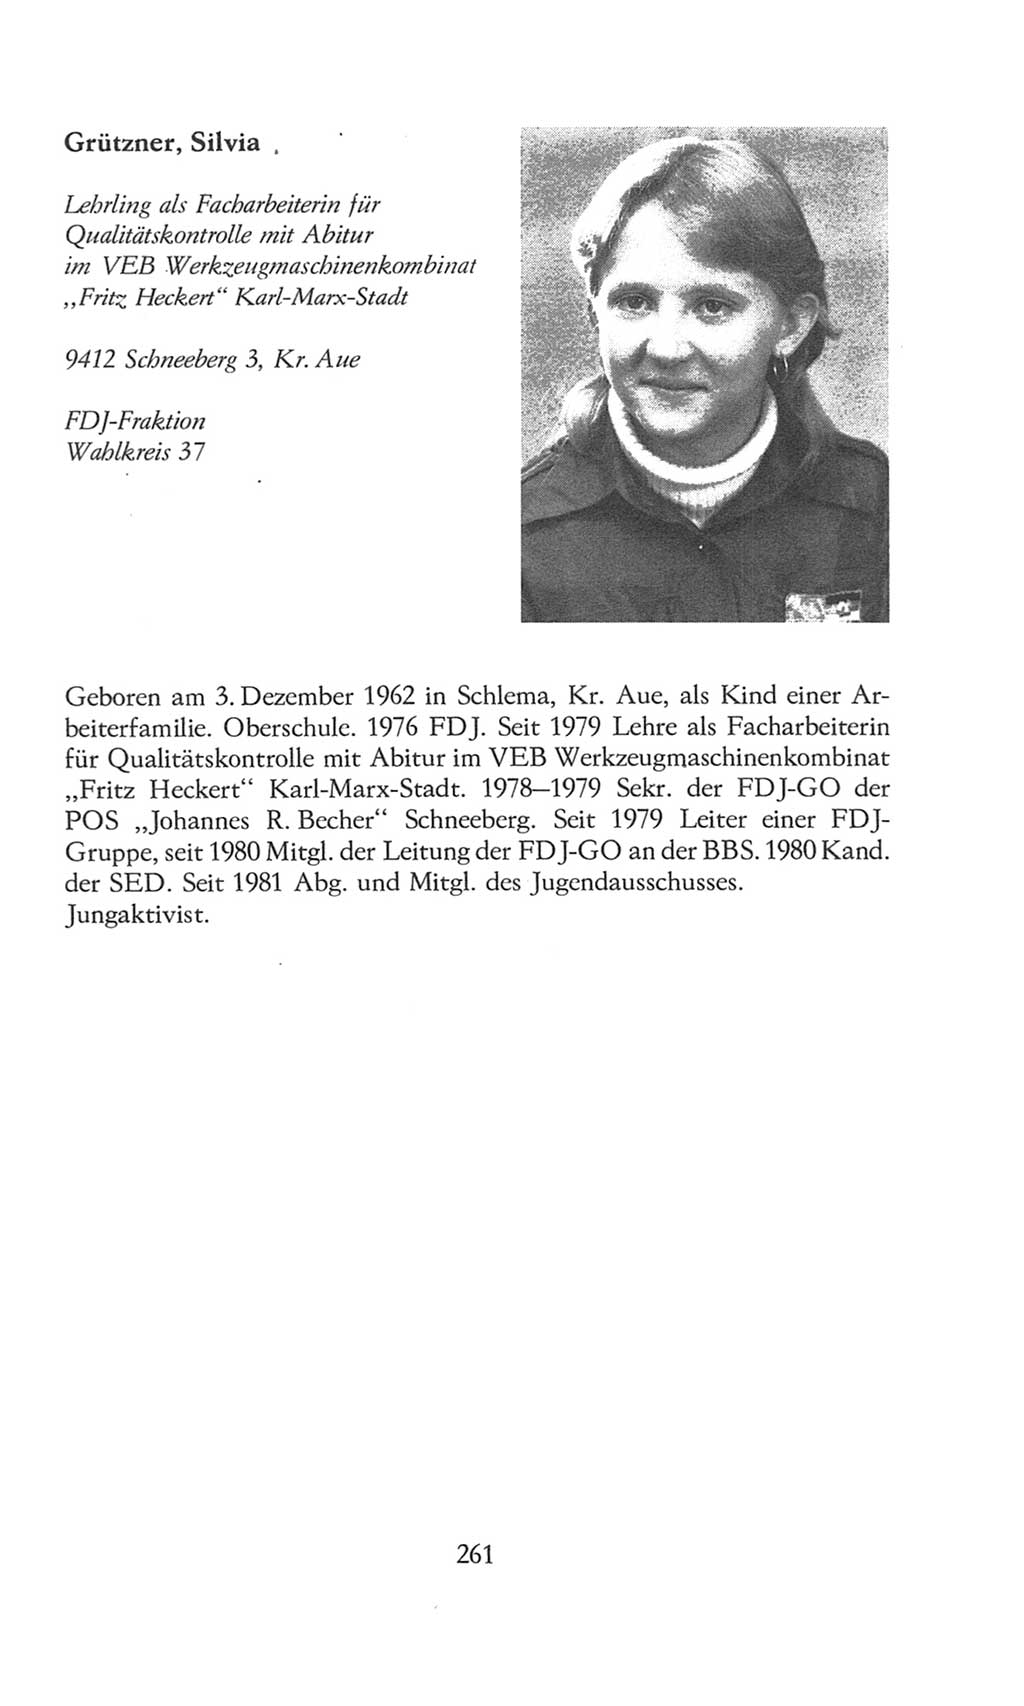 Volkskammer (VK) der Deutschen Demokratischen Republik (DDR), 8. Wahlperiode 1981-1986, Seite 261 (VK. DDR 8. WP. 1981-1986, S. 261)